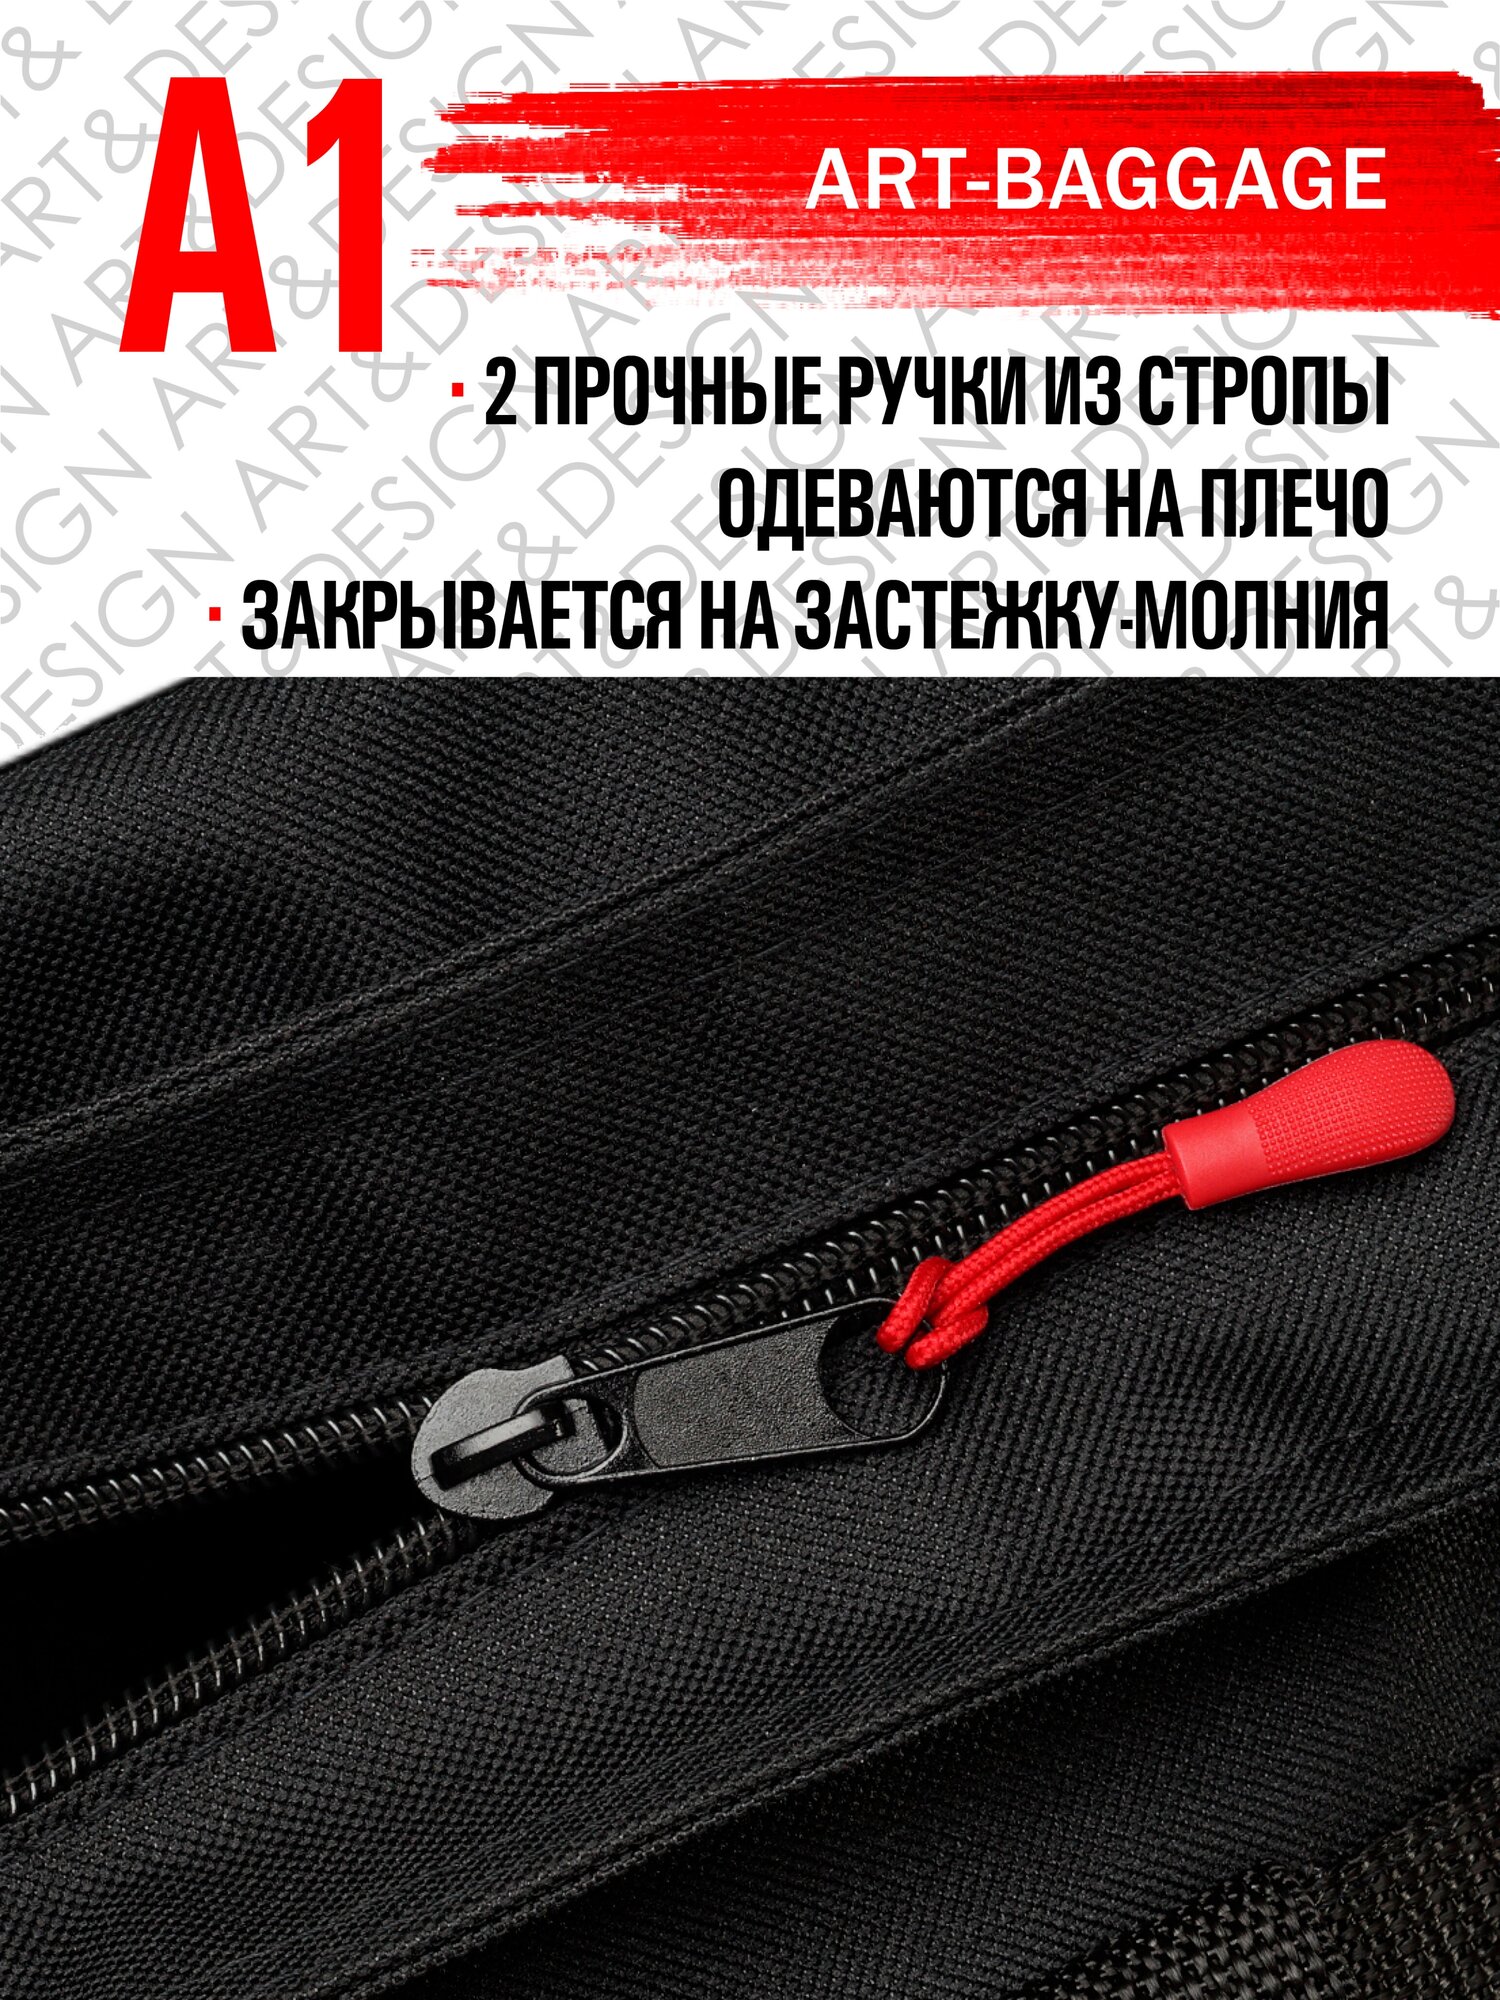 Сумка-чехол для подрамника А1 с ручками Art-baggage 6-103 А1 ART&DESIGN черный